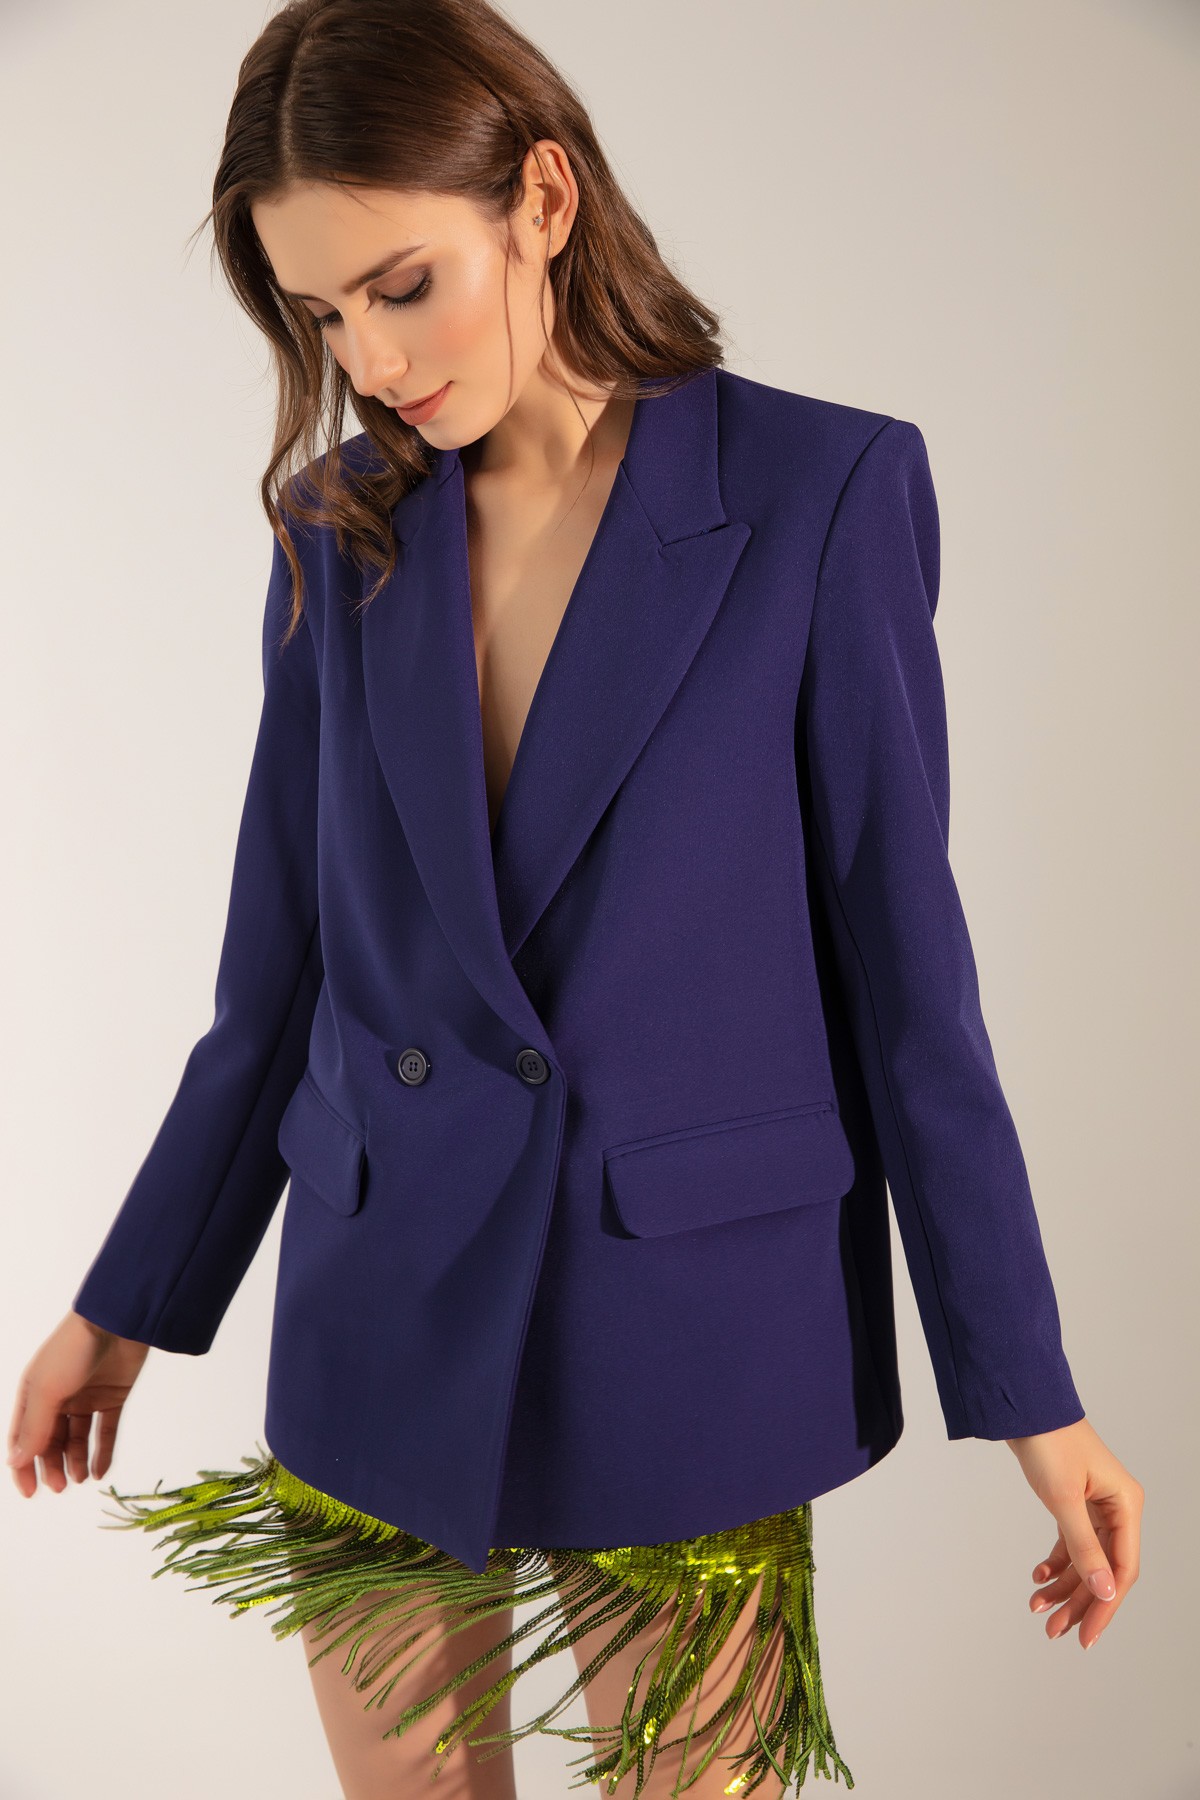 Kadın Oversize Düğmeli Blazer Ceket - Lacivert